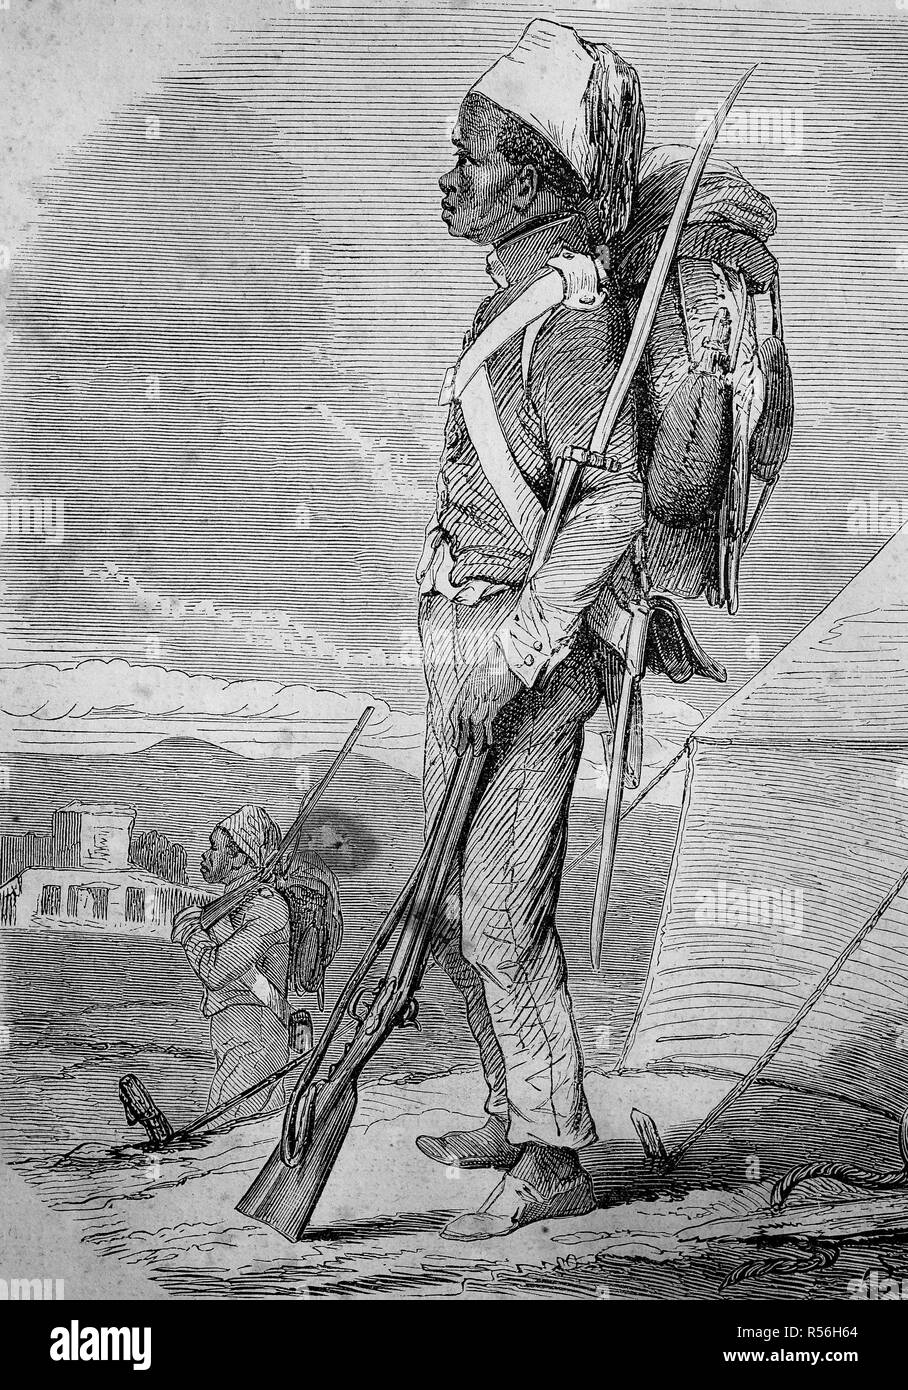 Un soldat tunisien avec un sac à dos et d'un mousquet, 1855, gravure sur bois, Tunisie Banque D'Images